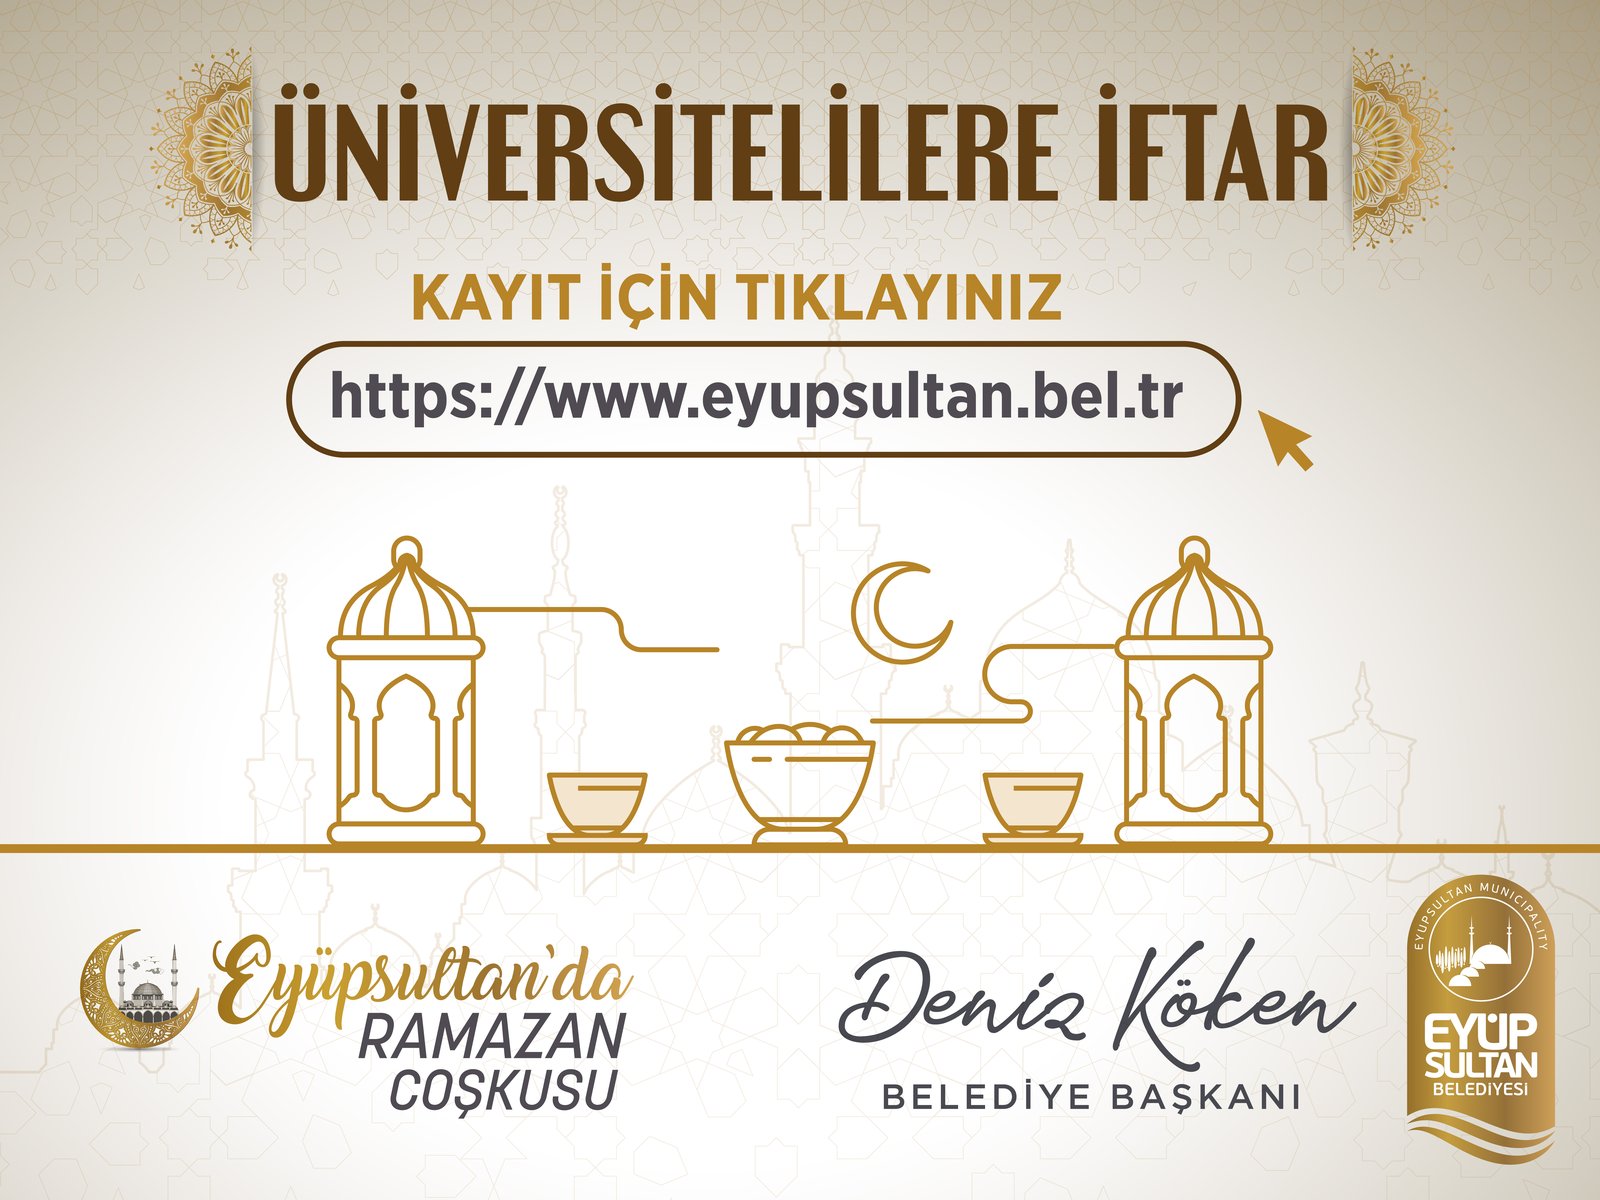 Üniversite öğrencilerine ücretsiz iftar ikramı